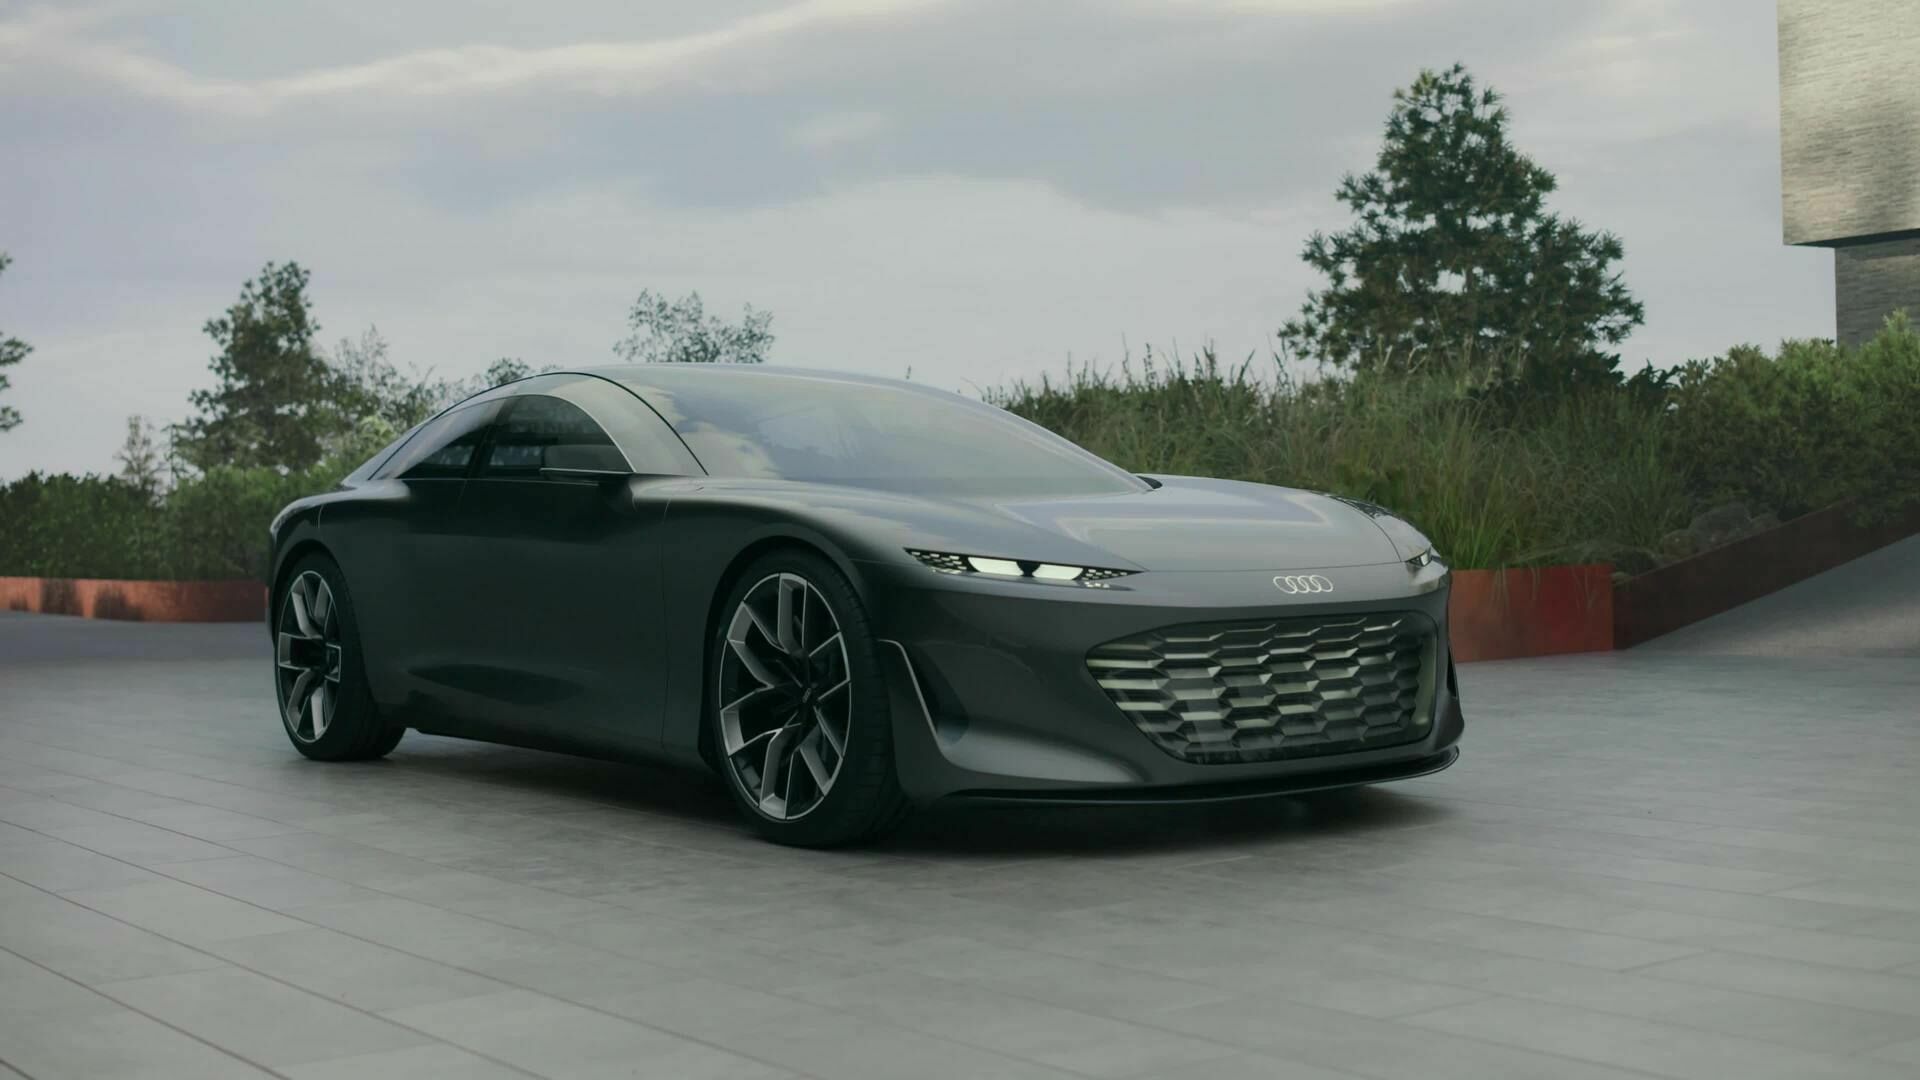 Die Zukunft ist jetzt – der Audi grandsphere concept